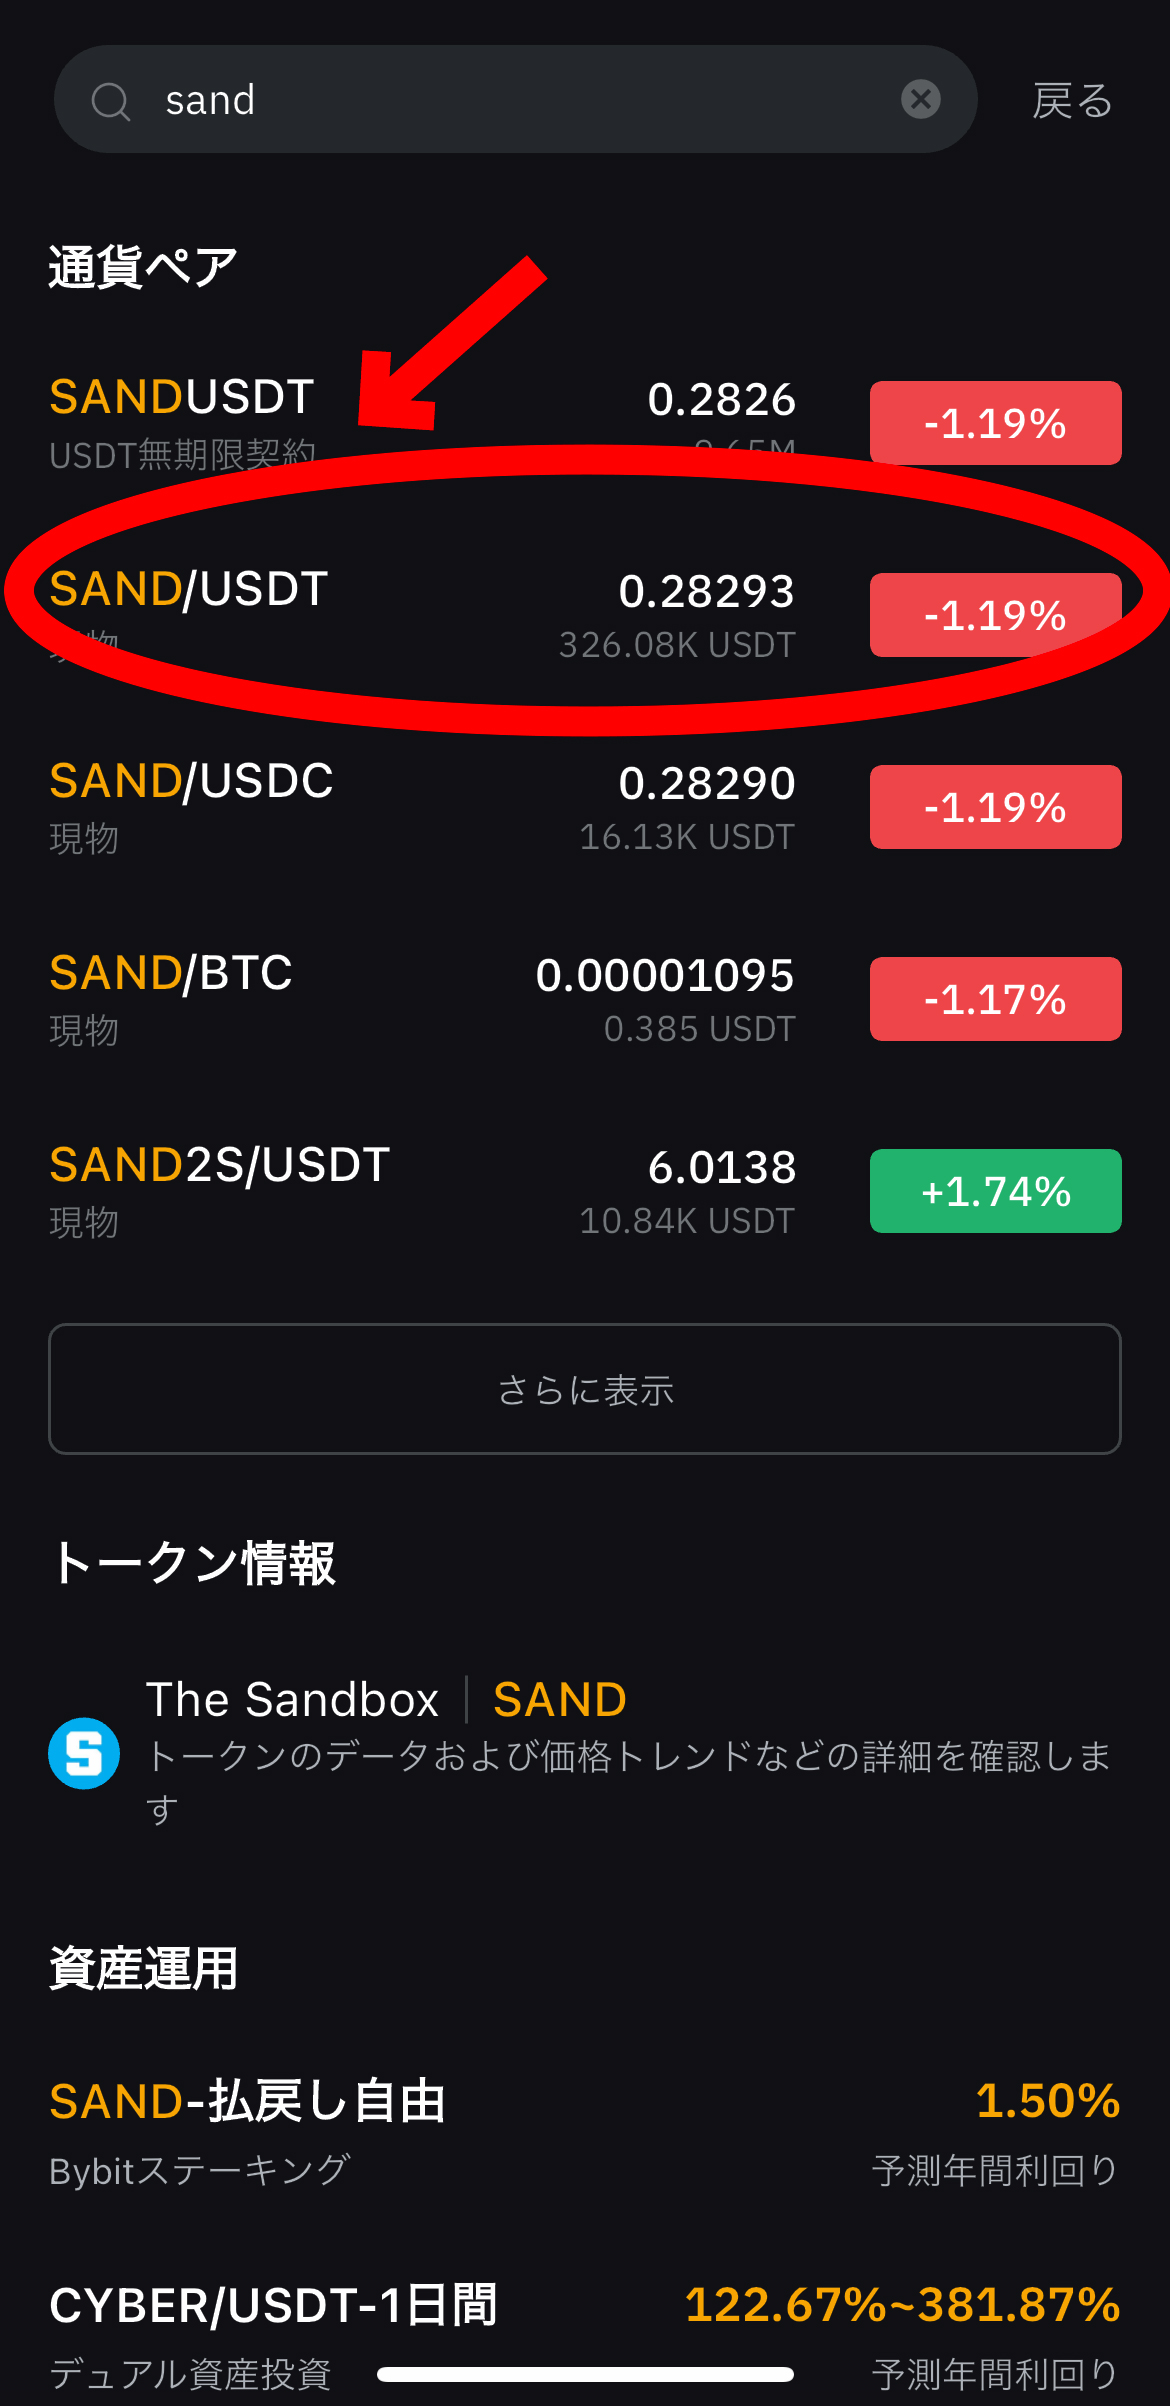 仮想通貨サンドボックスの買い方、ステーキング方法【SAND】【The Sandbox】【Bybit】【バイビット】SAND/USDT（現物）を選択します